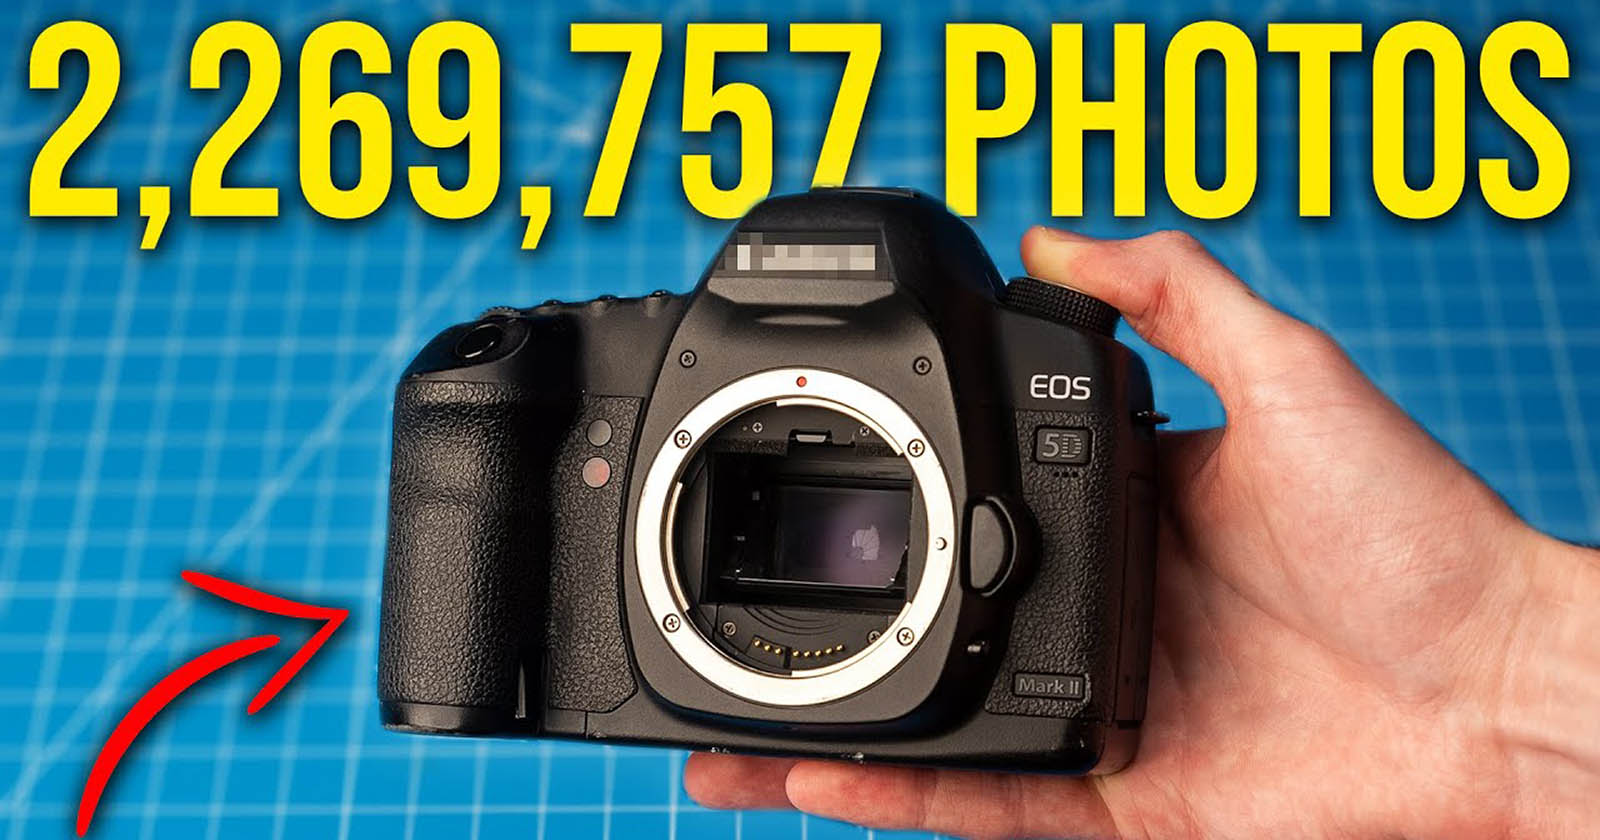 This Canon 5D Mark II Has Taken Over 2.2 Million Shutter Clicks